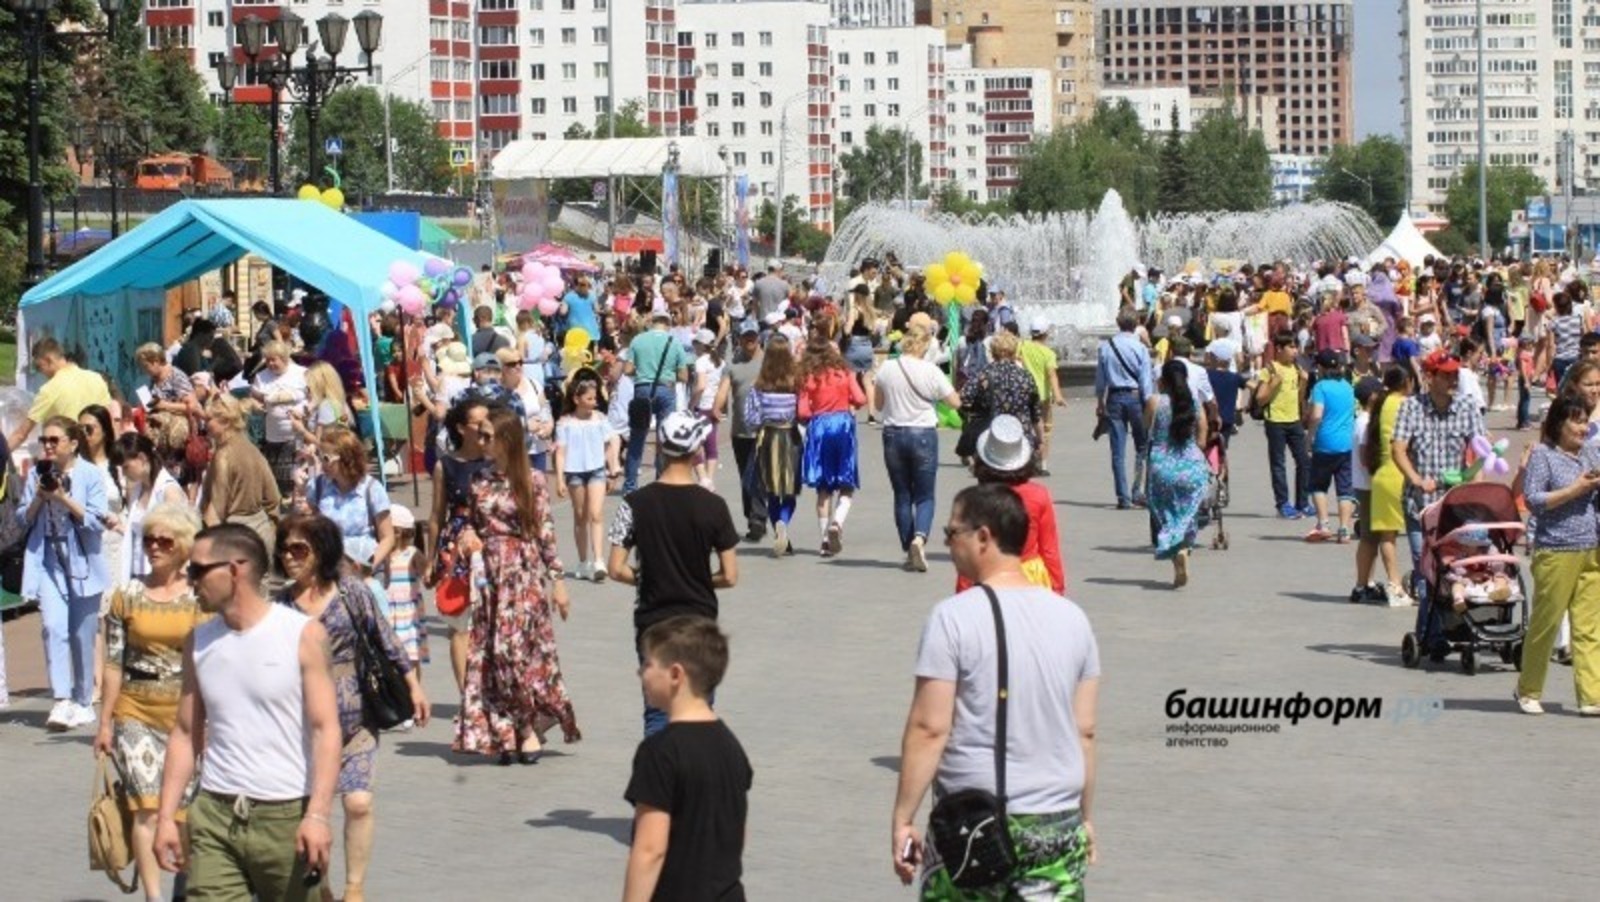 Башкирия признана одним из самых многонаселенных регионов России - предварительные итоги переписи